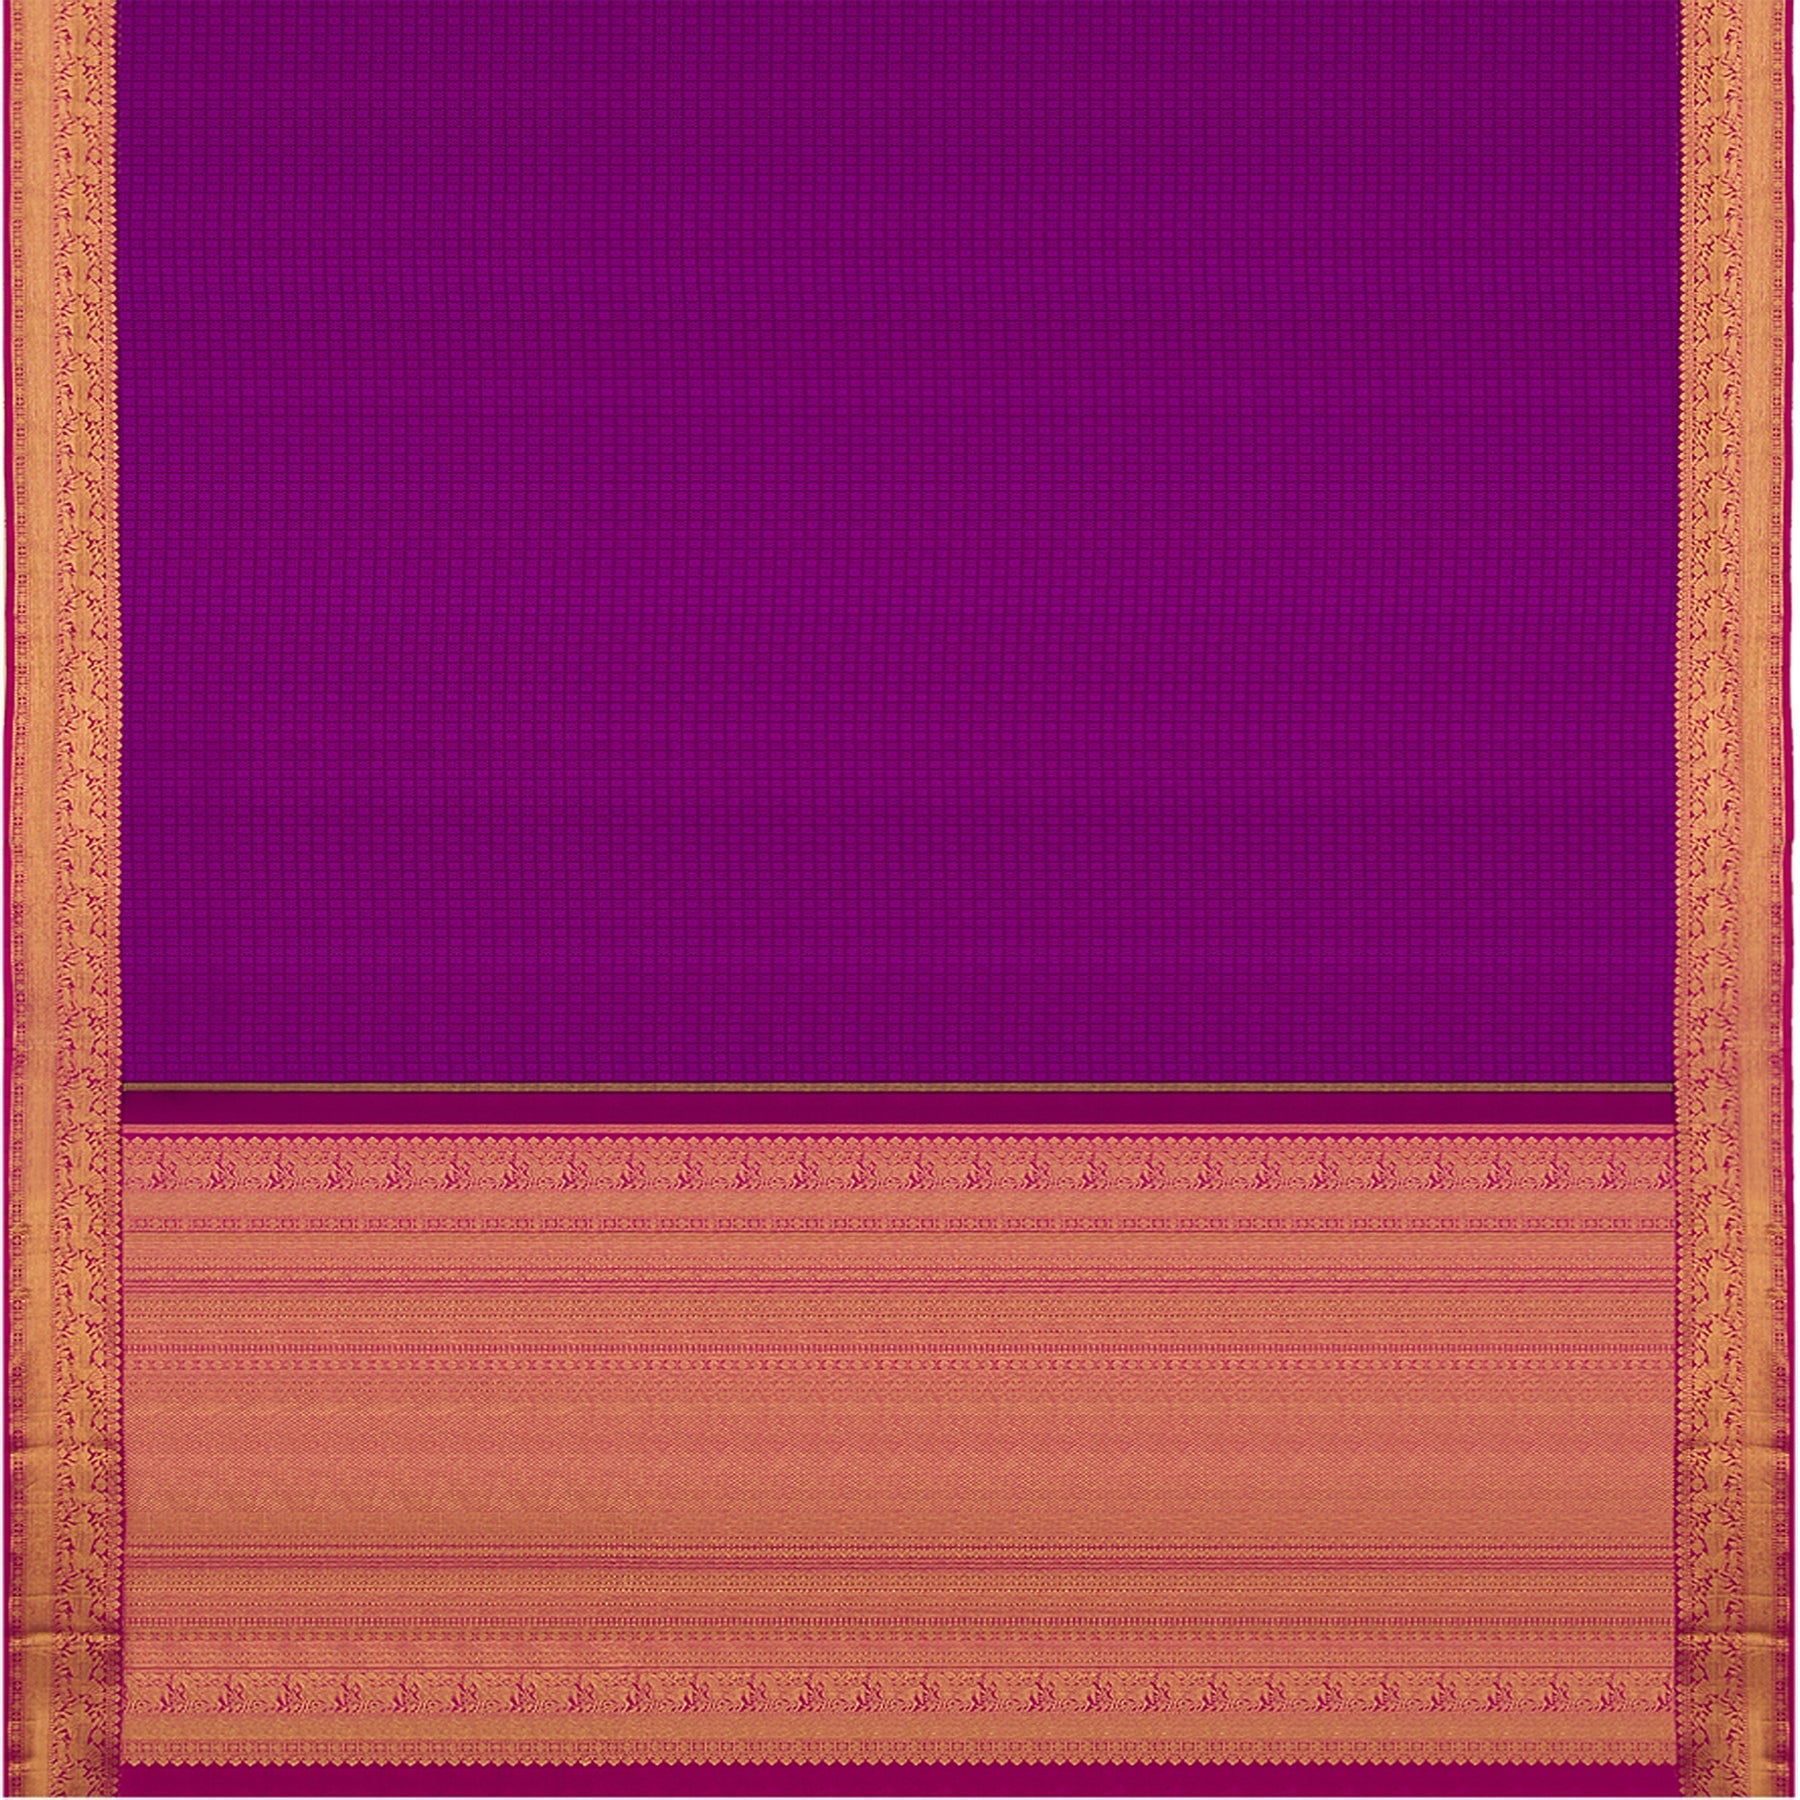 Kanakavalli Kanjivaram Silk Sari 21-100-HS001-04475 - Full View